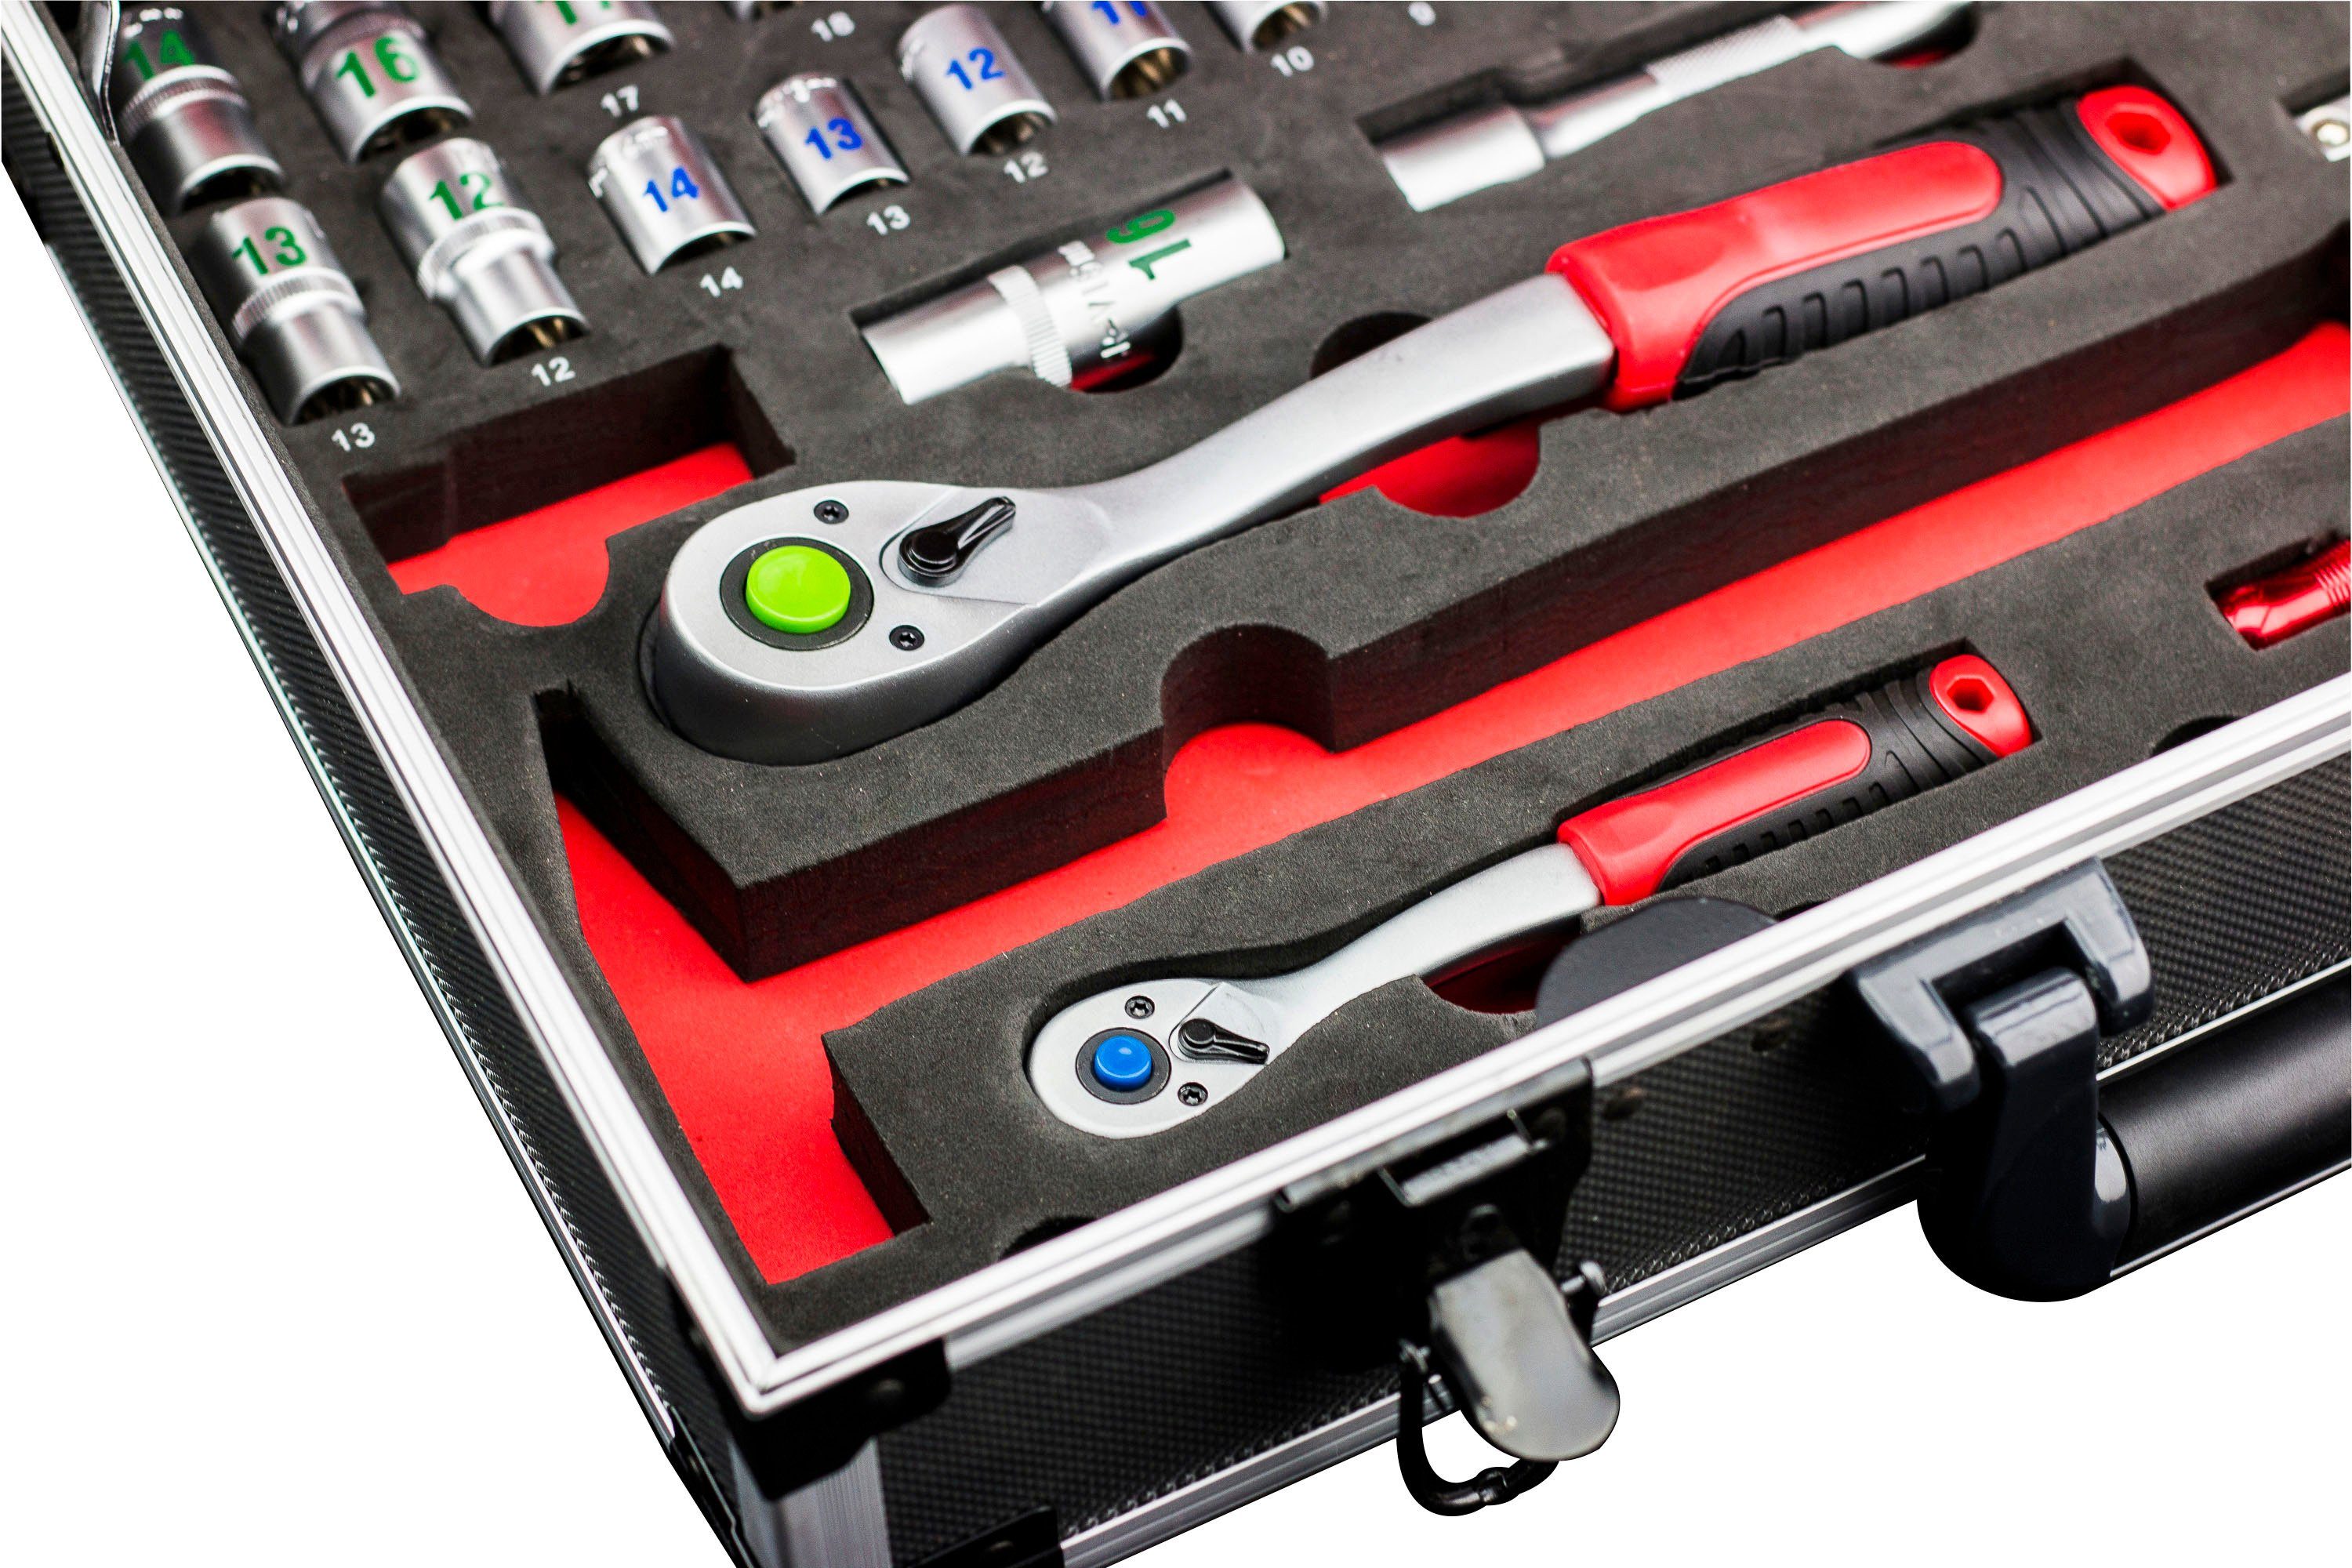 mit Qualitätswerkzeug 131-teilig, meister Werkzeugkoffer Profi 8973750, & Knipex / Wera, Alu-Koffer Werkzeugset von